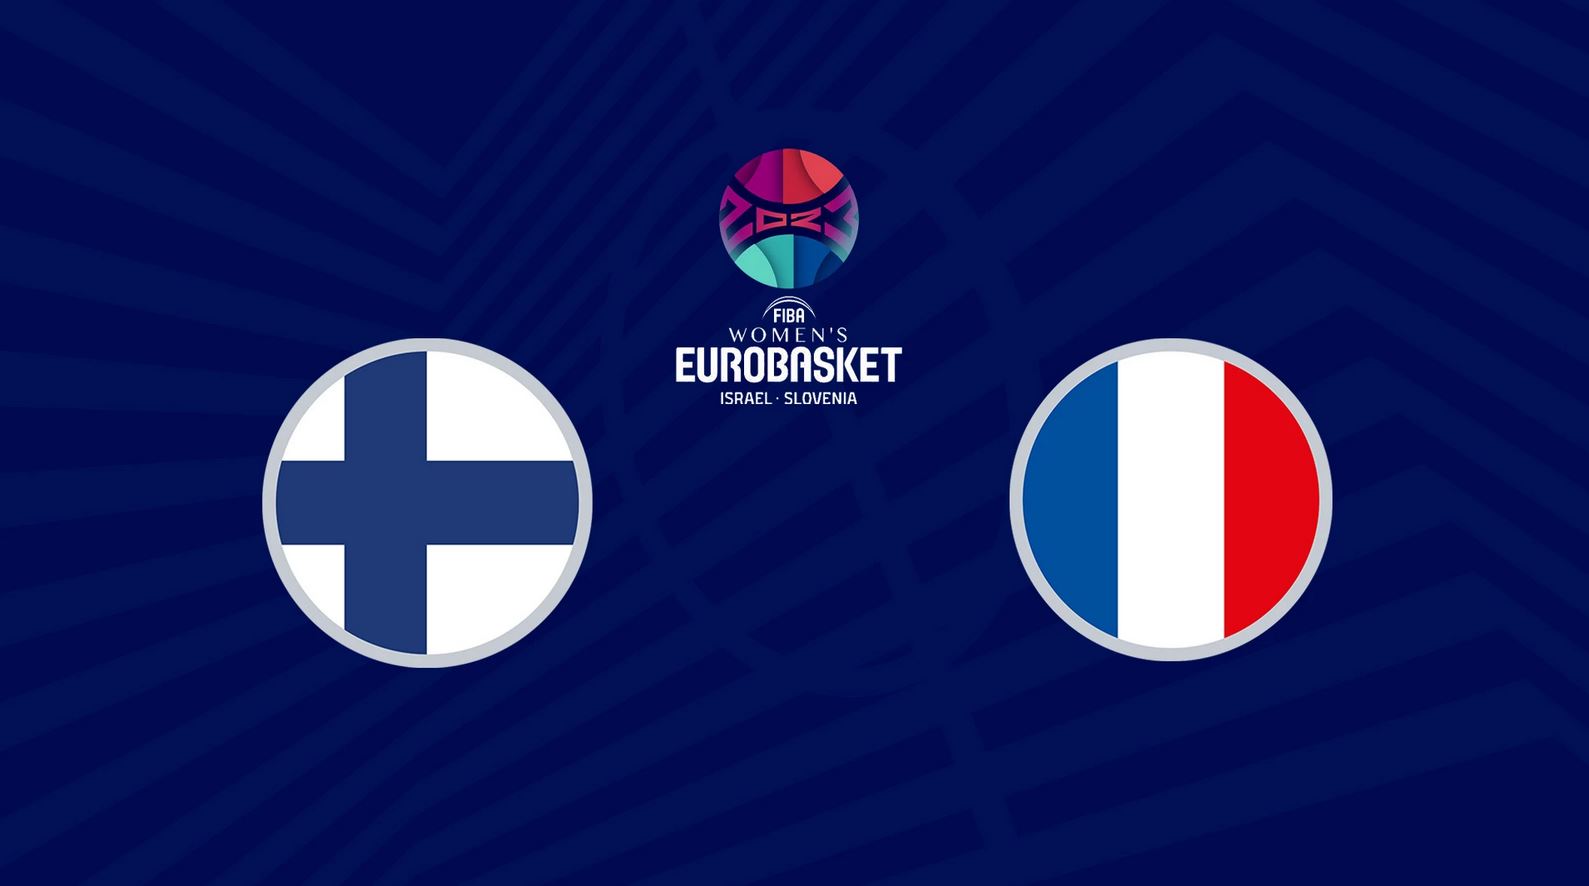 Finlande / France (TV/Streaming) Sur quelle chaîne et à quelle heure regarder le match de Basket ?